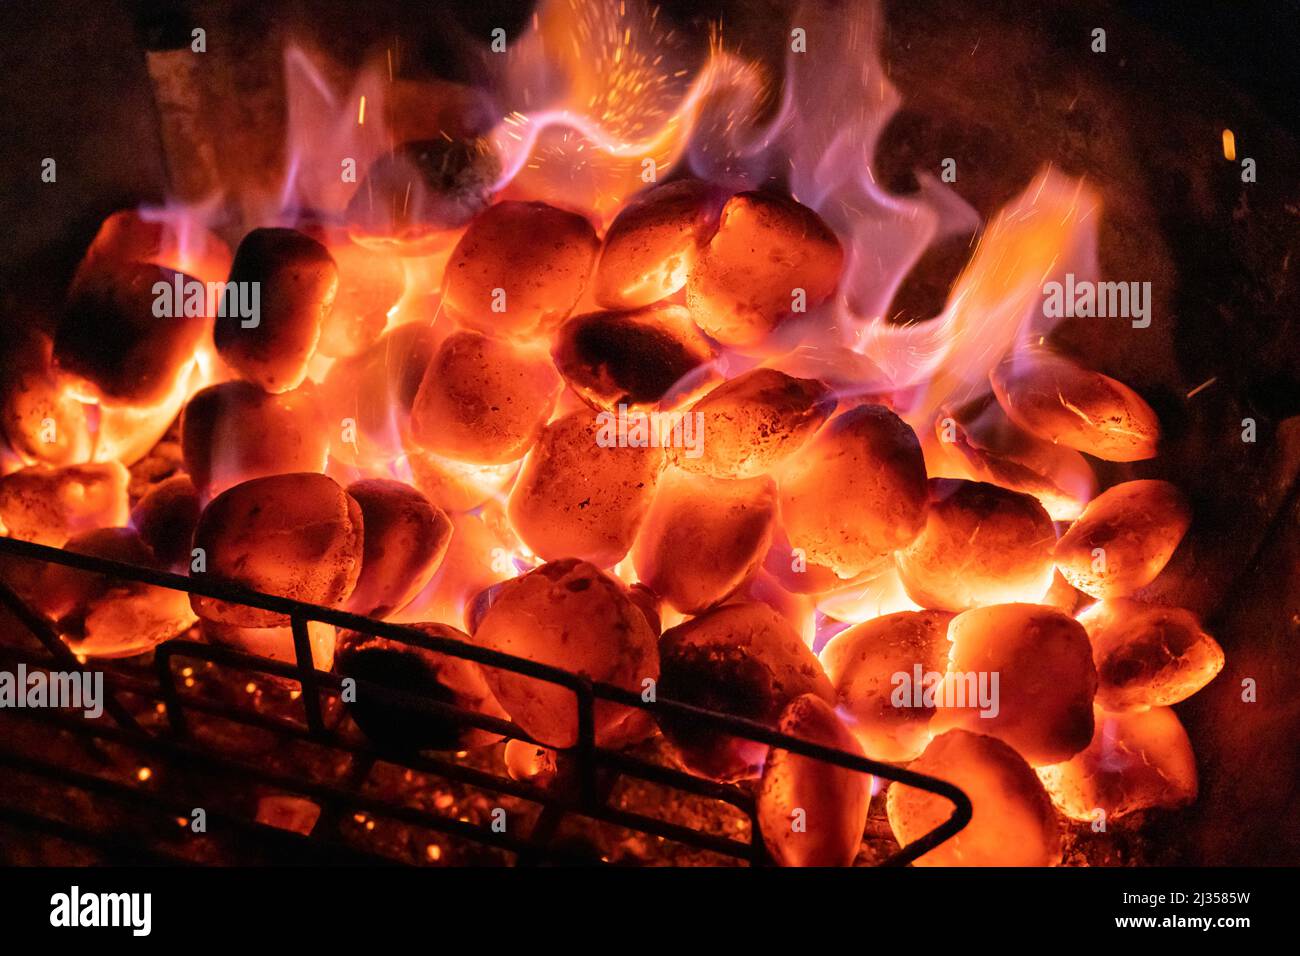 Heiße Kohlen auf einem Grill in der Nacht mit einer Grillvorführen. Konzept: Grillen, Grillen, grillen, Wärme, Grillen, Heiße Kohlen, brennende Kohlen, Hitze, Brennstoff Stockfoto